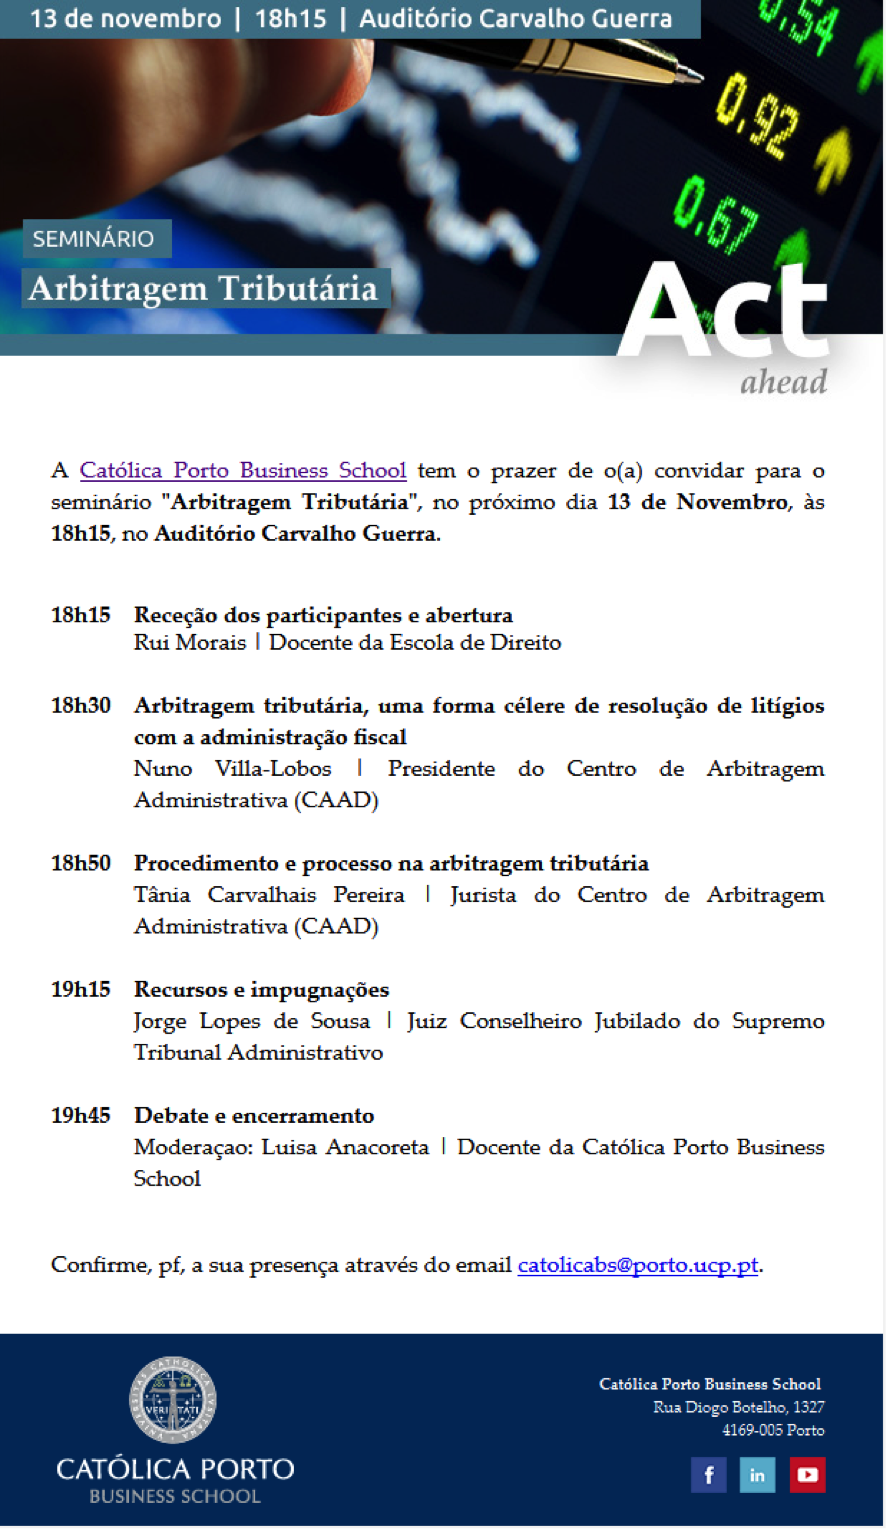 Catolica Porto Business School - Seminario 2014-10-29 09-13-03 2